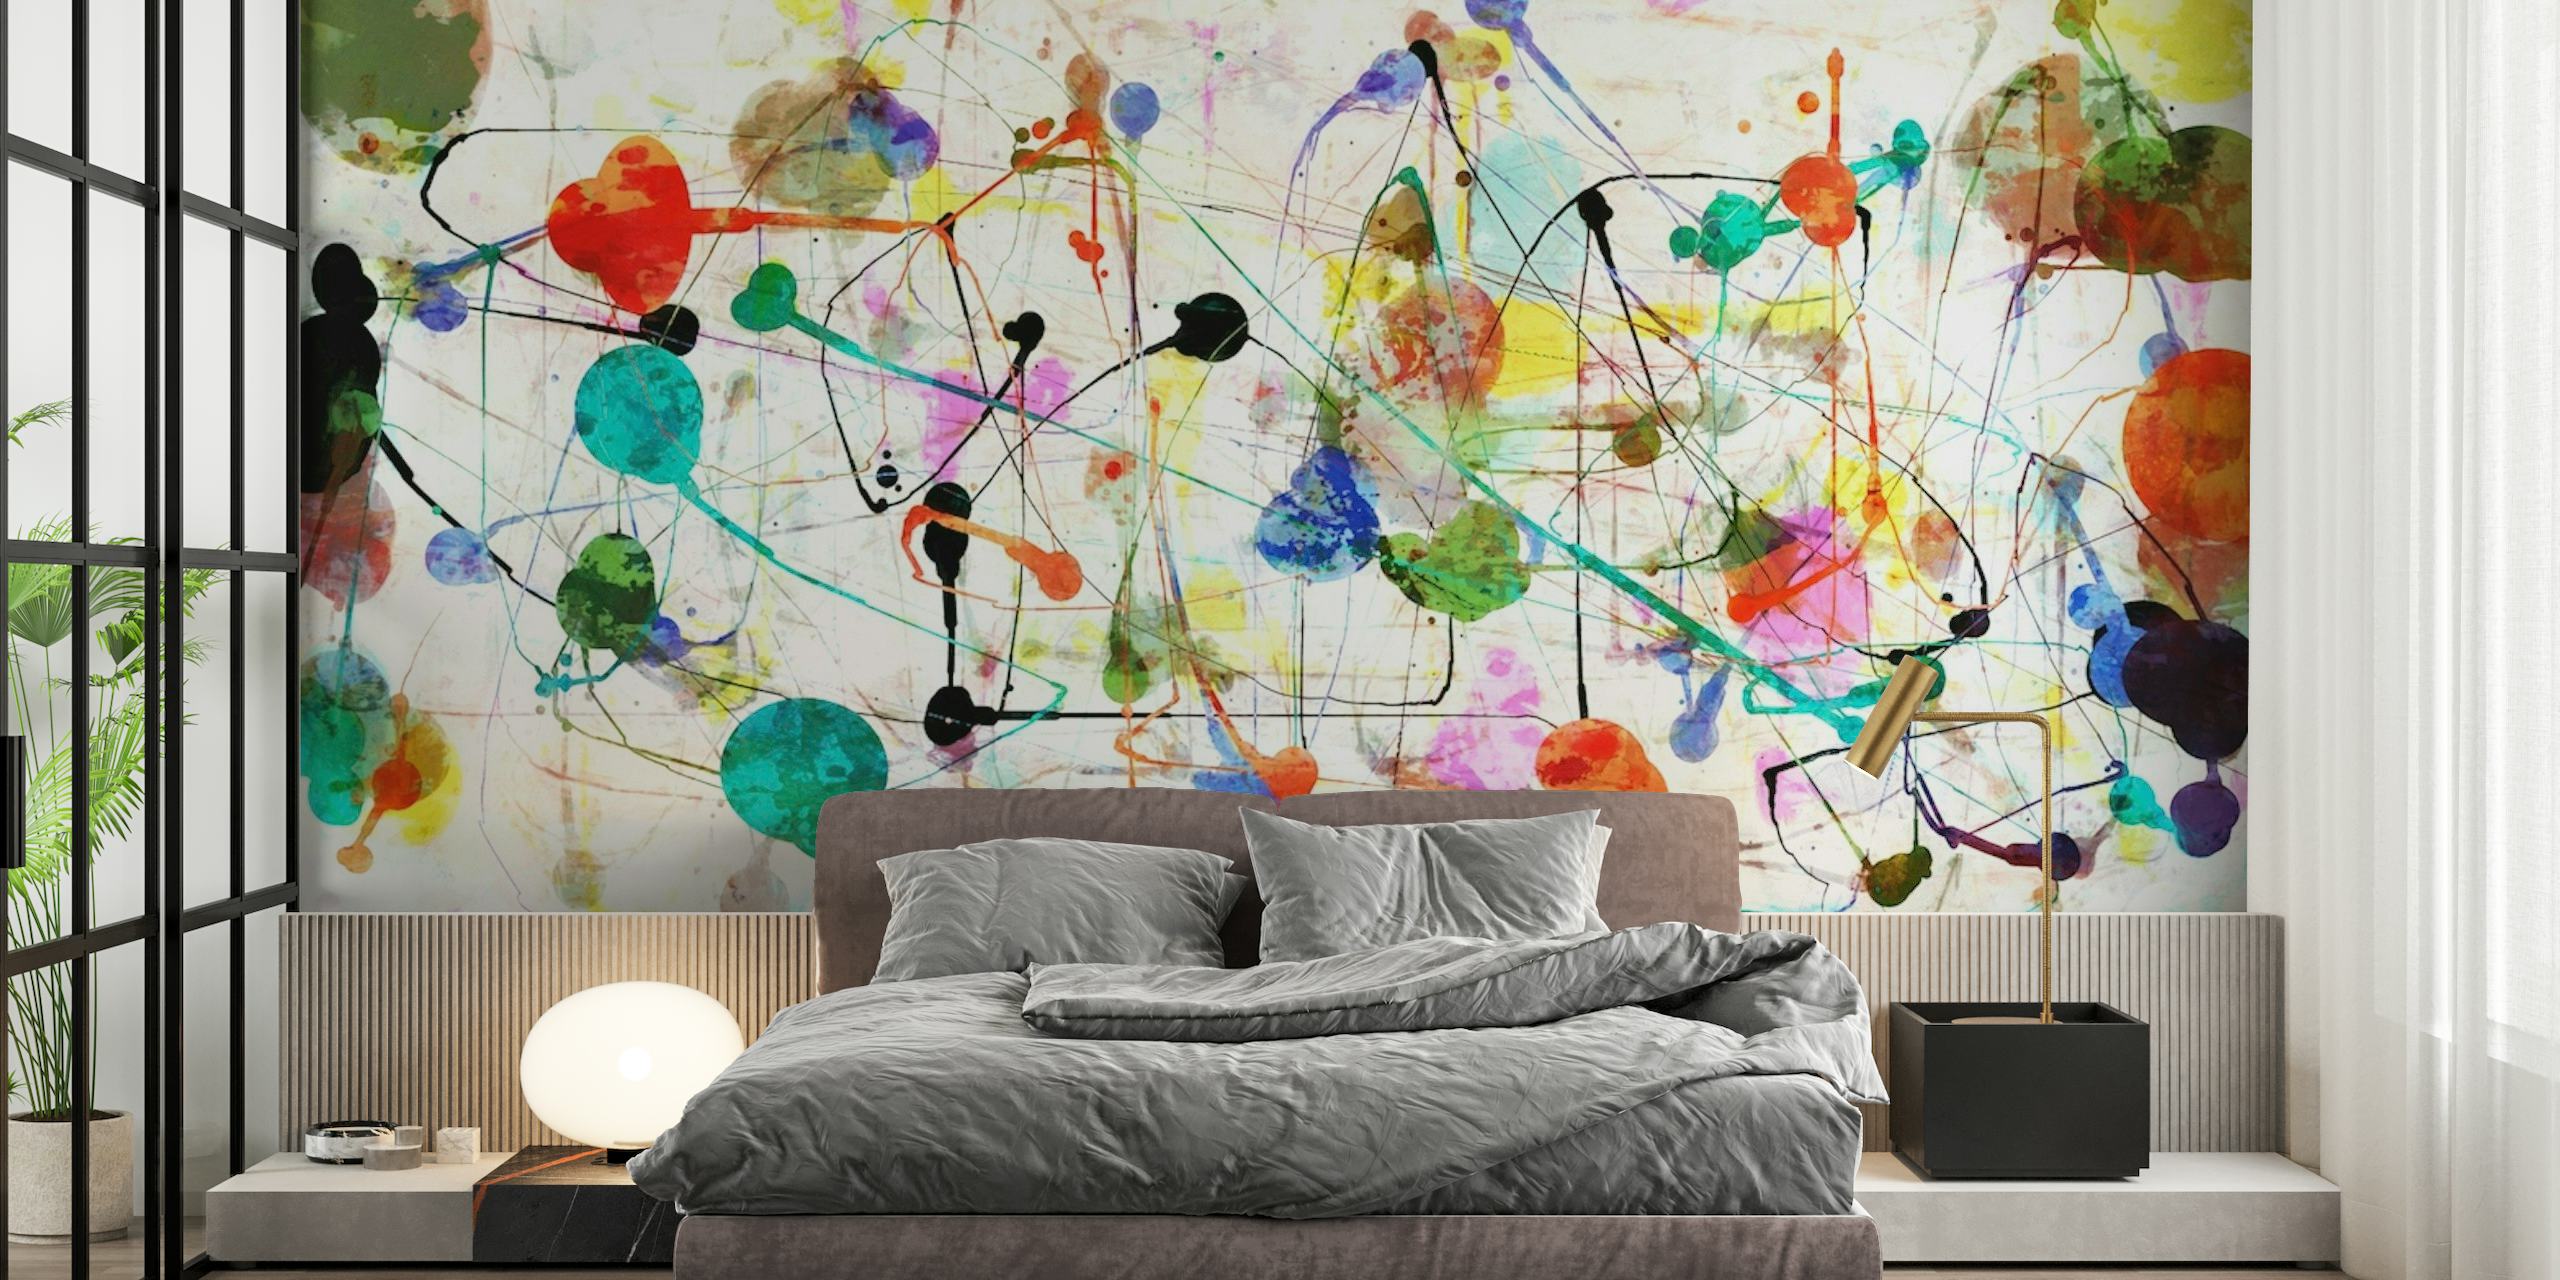 Panoramic Pollock Party behang